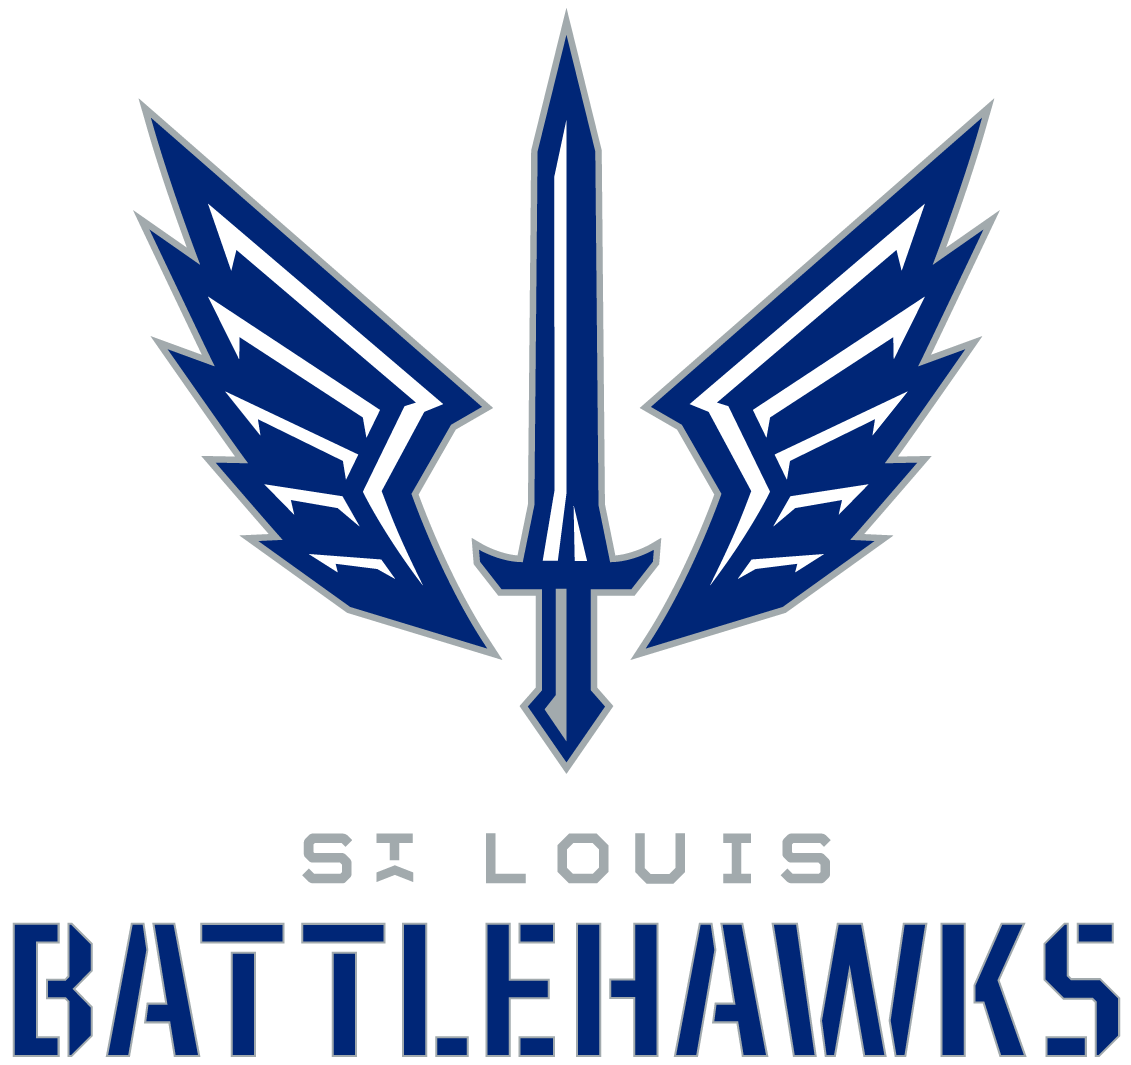 Record crowd reaches St. Louis nirvana as Battlehawks trounce Arlington in  BattleDome opener - Scoops